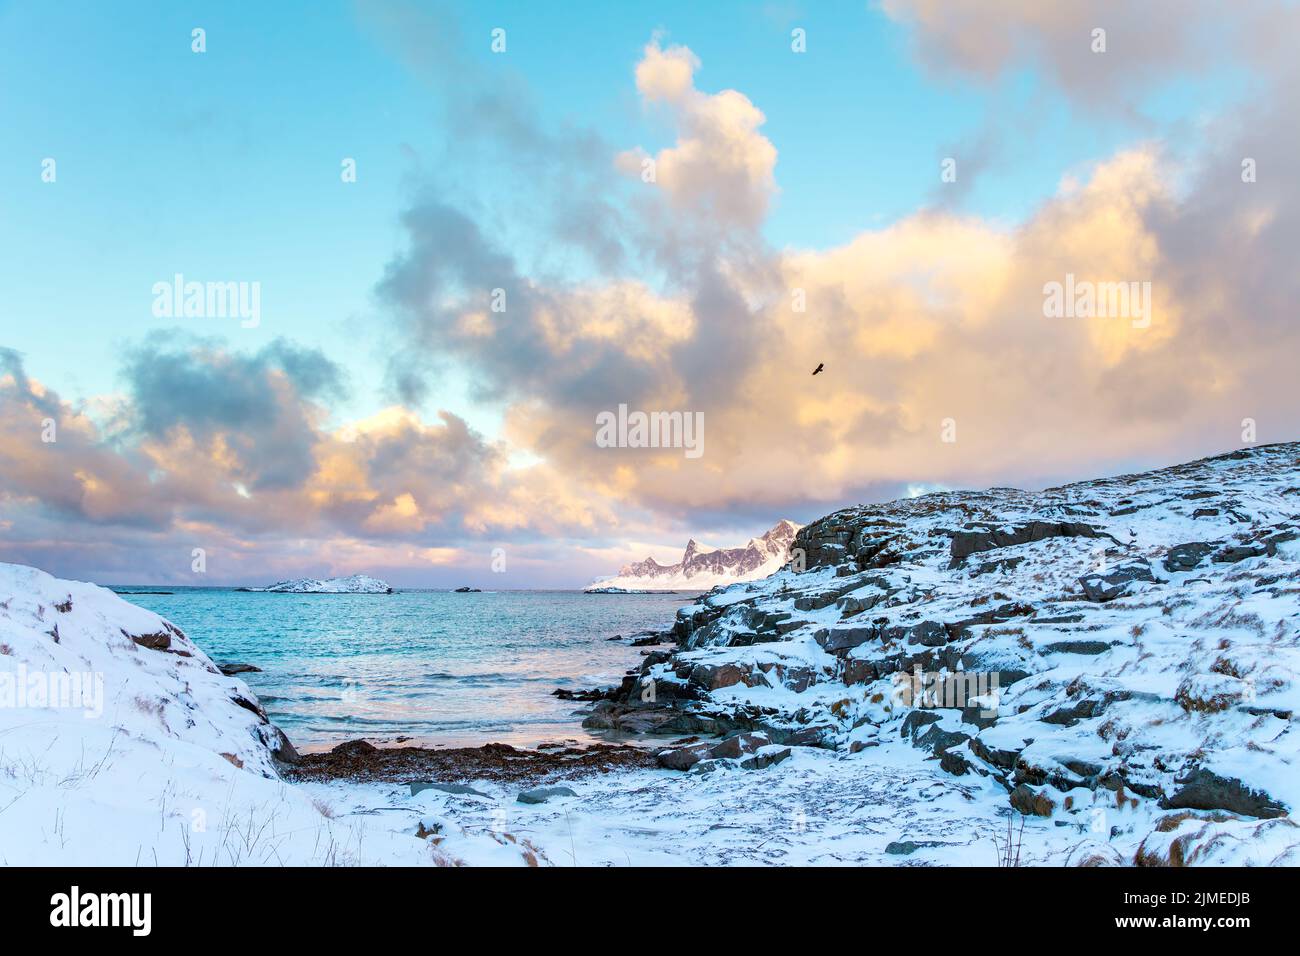 El invierno en Noruega. Lofoten. Las nubes sobre la bahía de las islas. La costa rocosa está cubierta de nieve Foto de stock